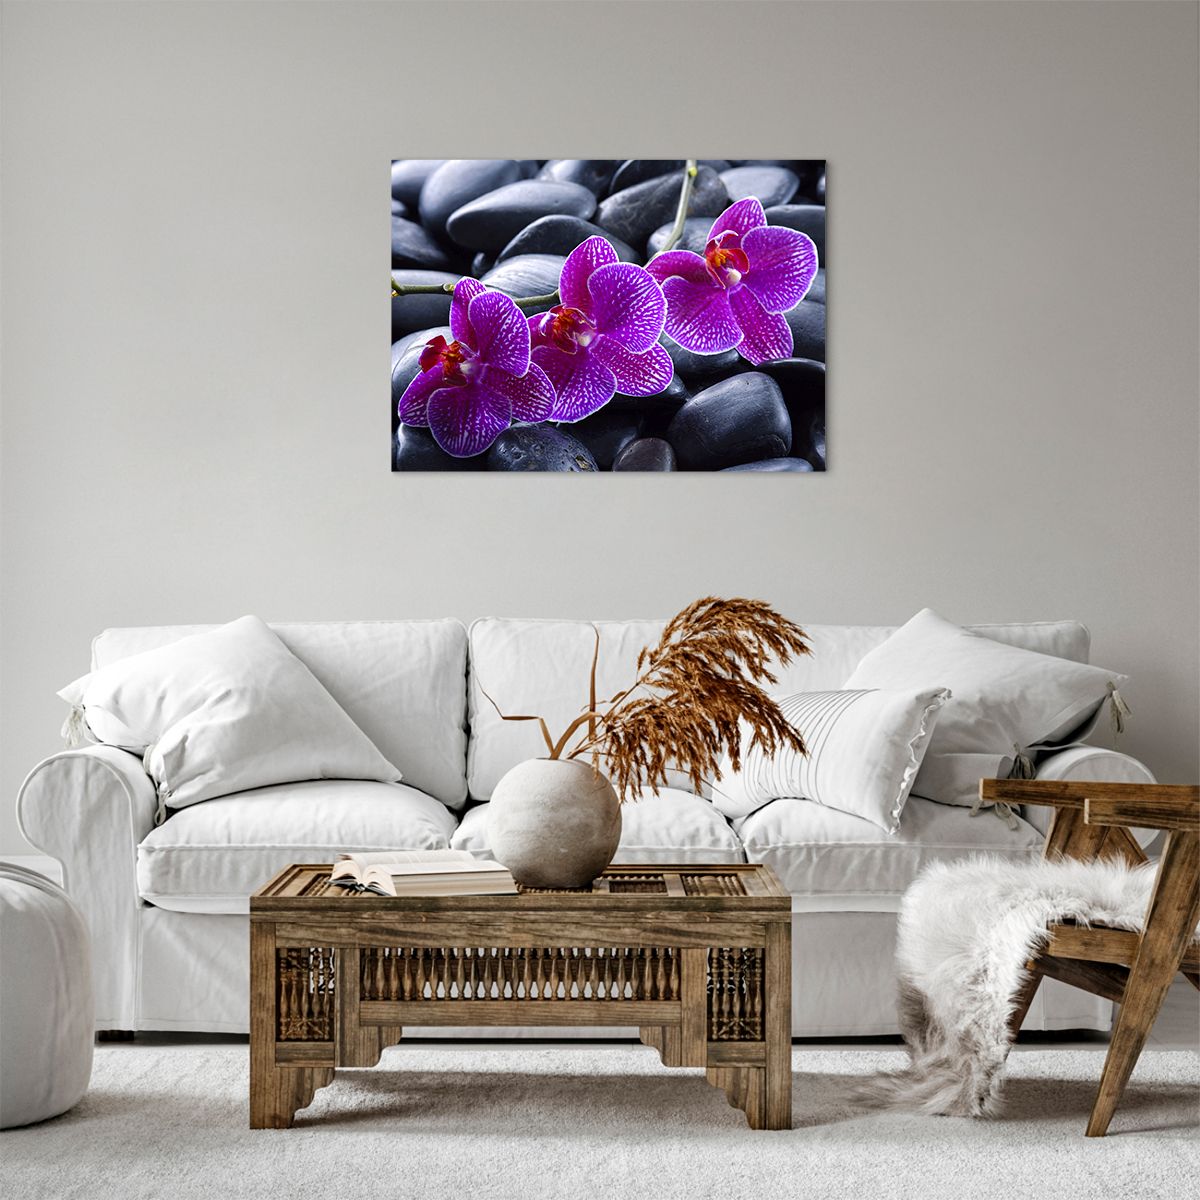 Bild auf Leinwand Blumen, Bild auf Leinwand Steine, Bild auf Leinwand Orchidee, Bild auf Leinwand Orchidee, Bild auf Leinwand Spa